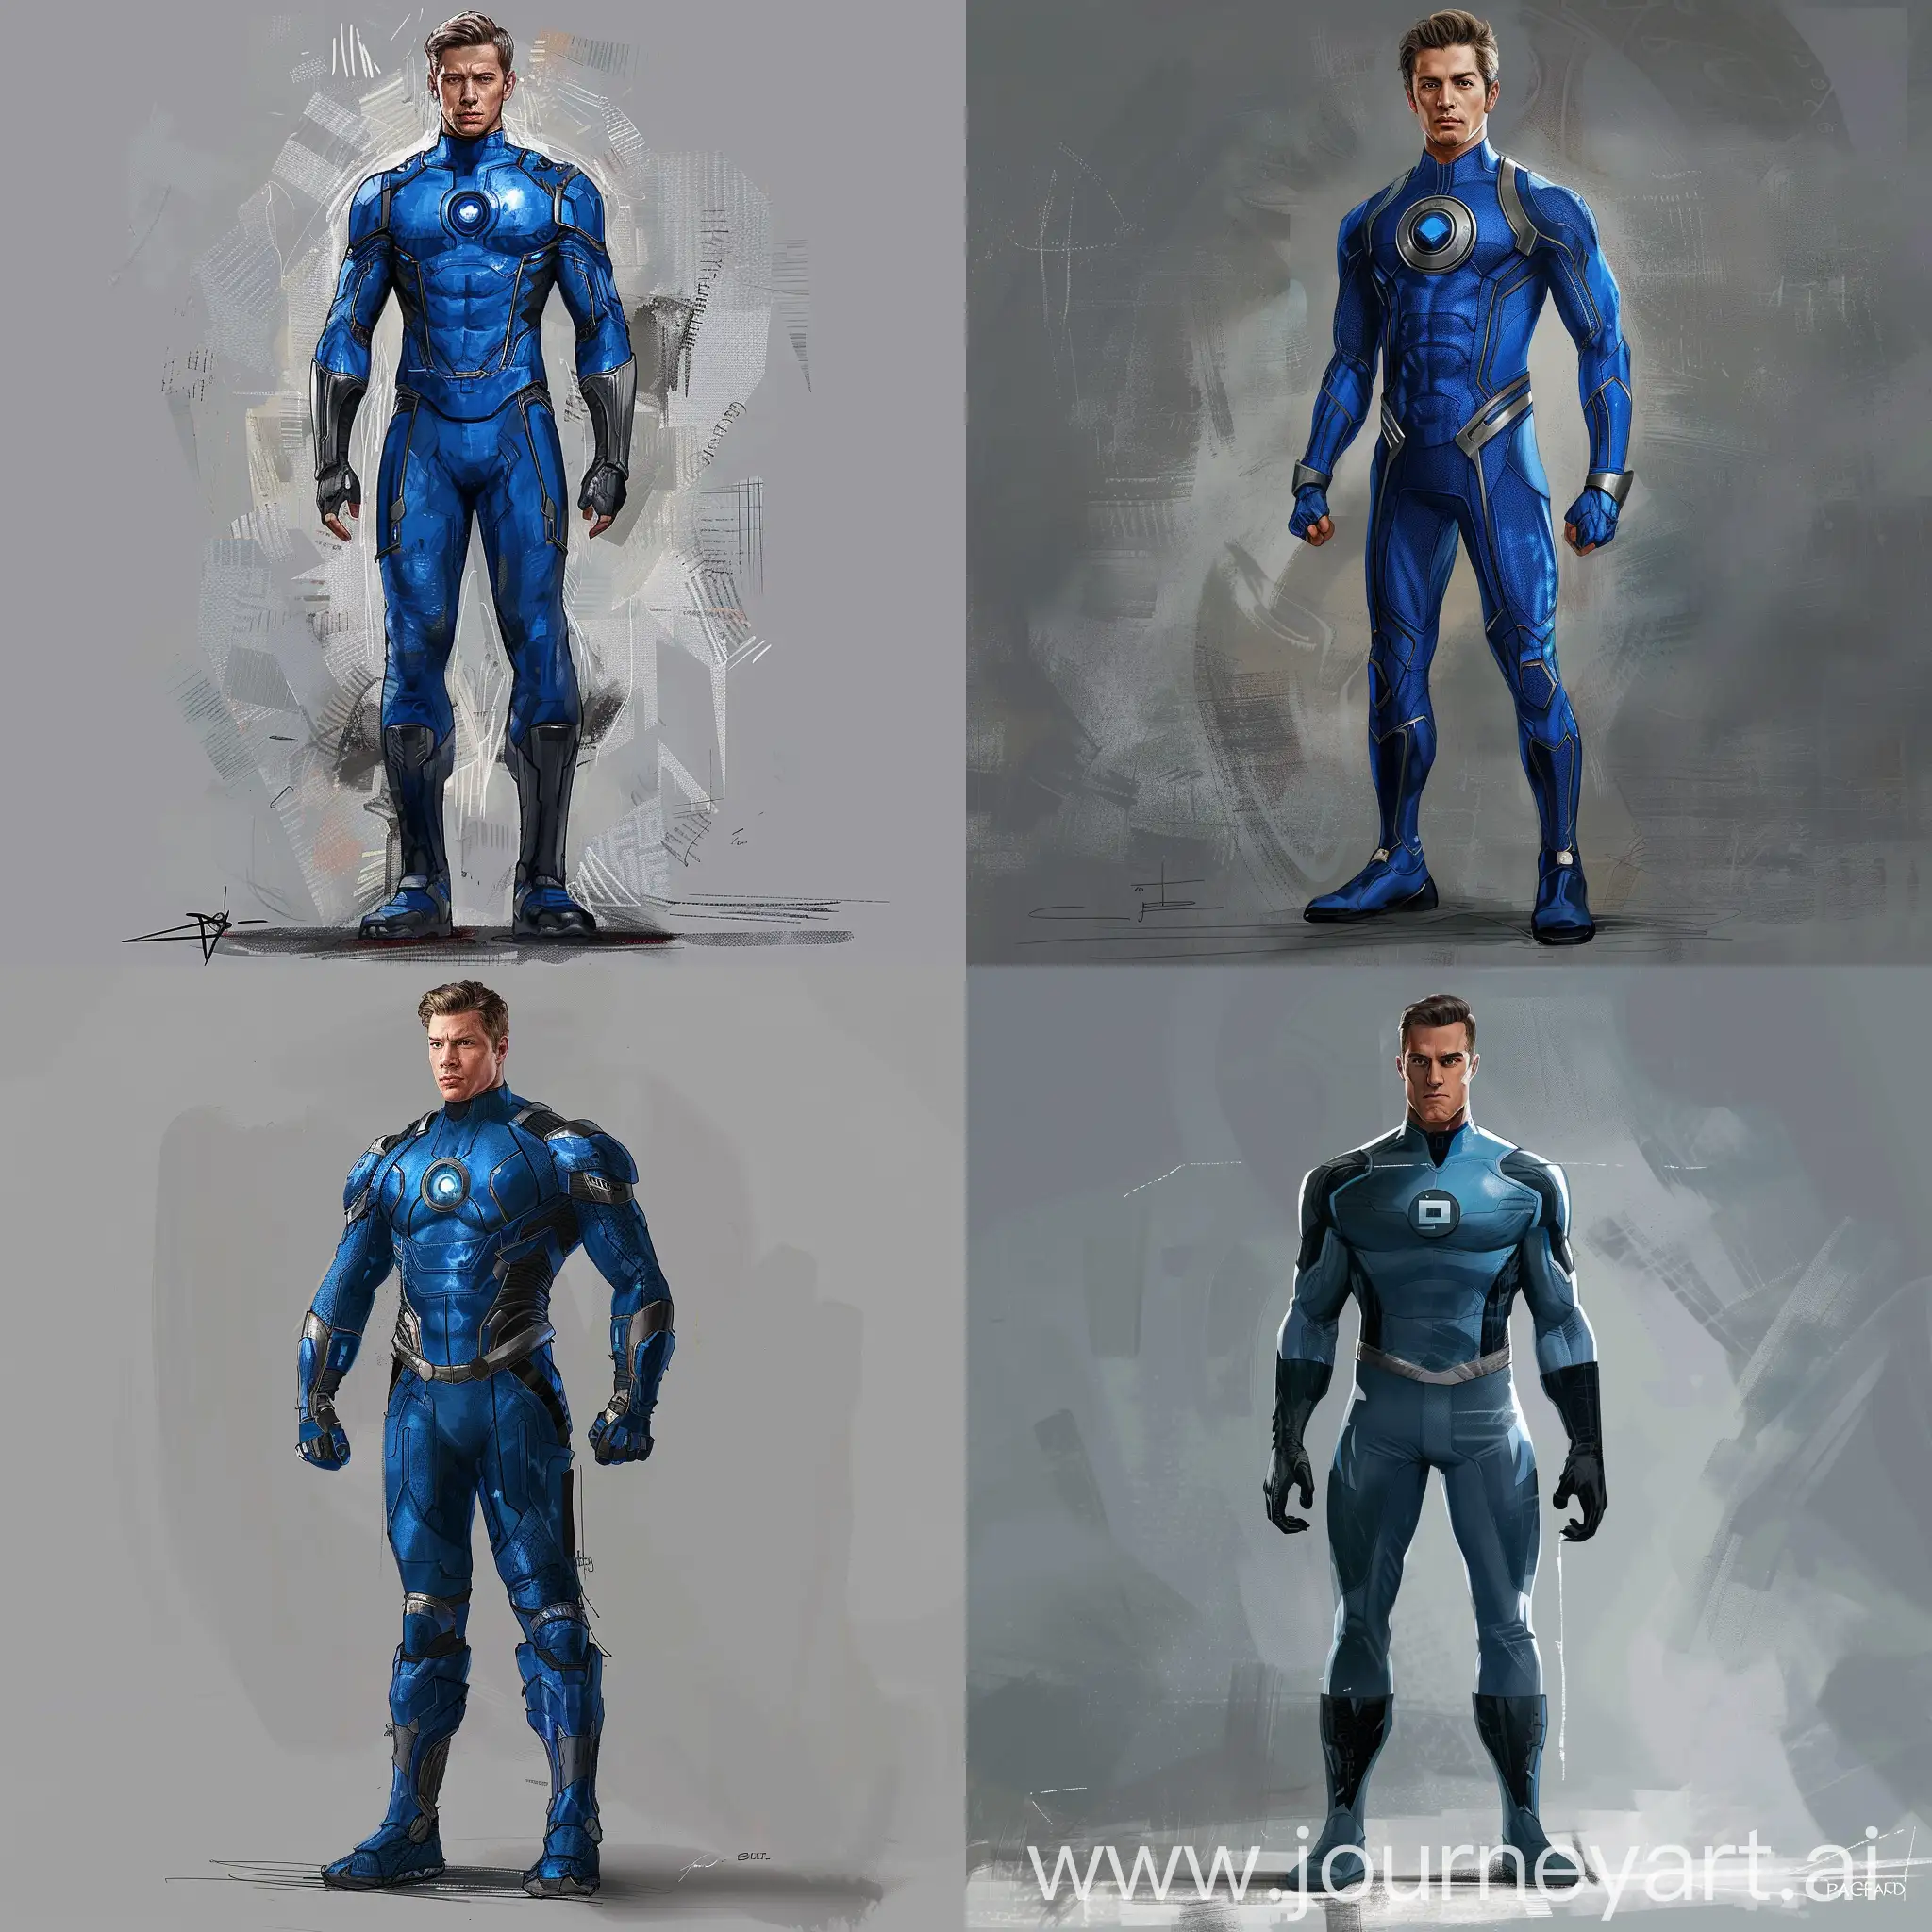 Pedro Pascal Fantastic Four suit, concept art, illustration, grey background, blue suit